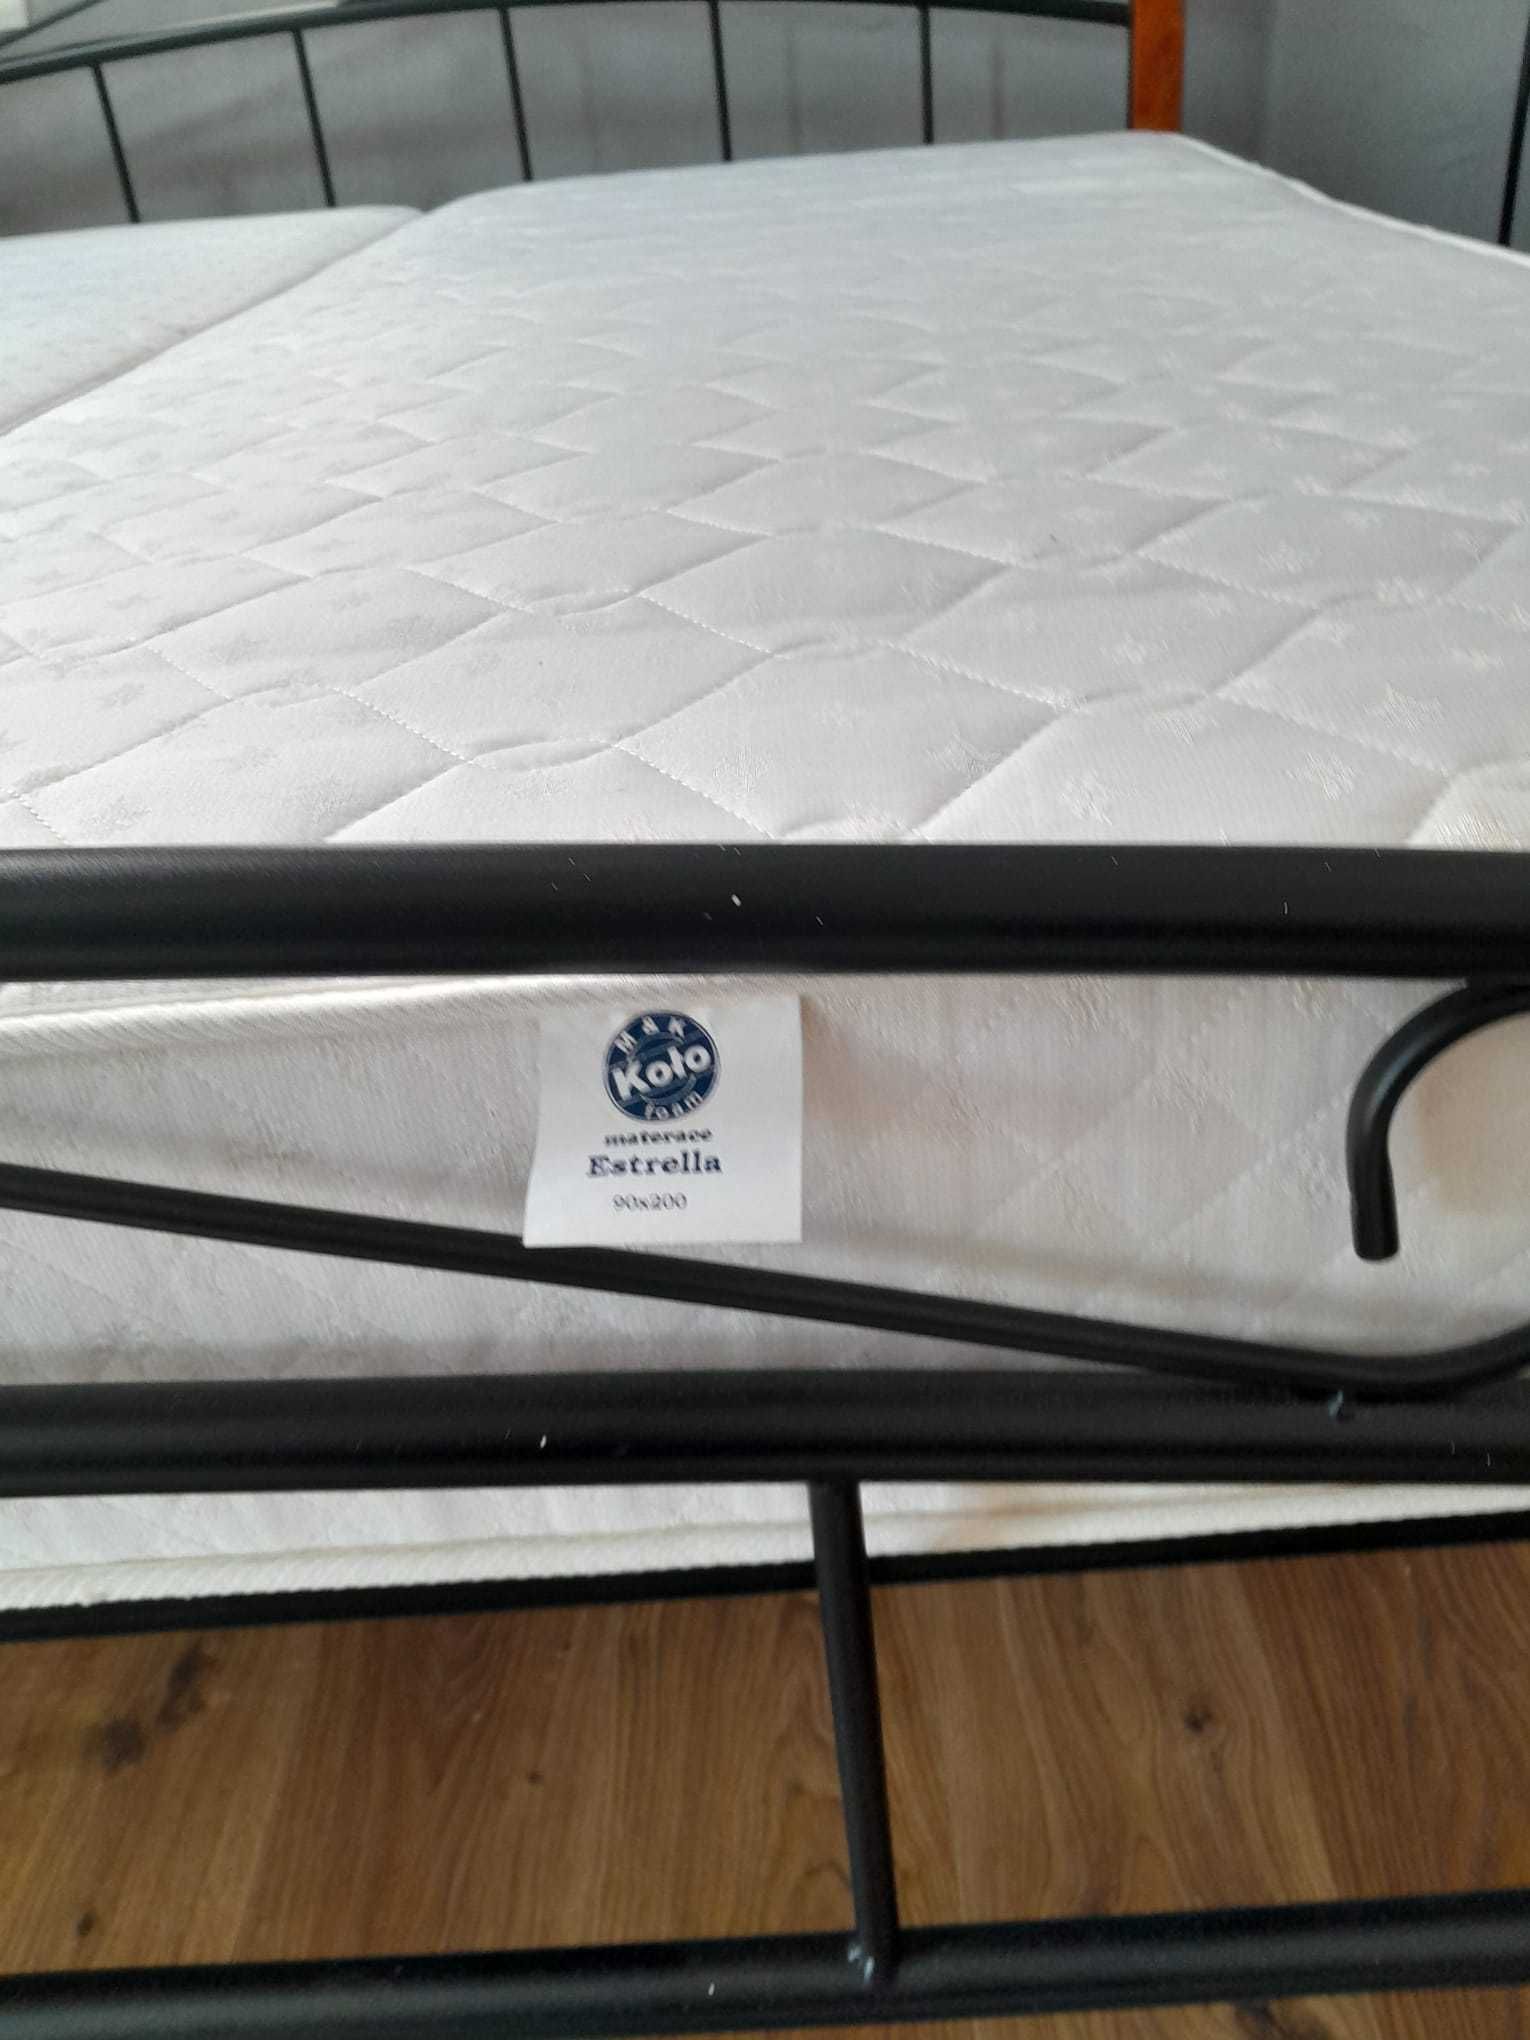 Sprzedam łóżko z materacami 190 x 210cm